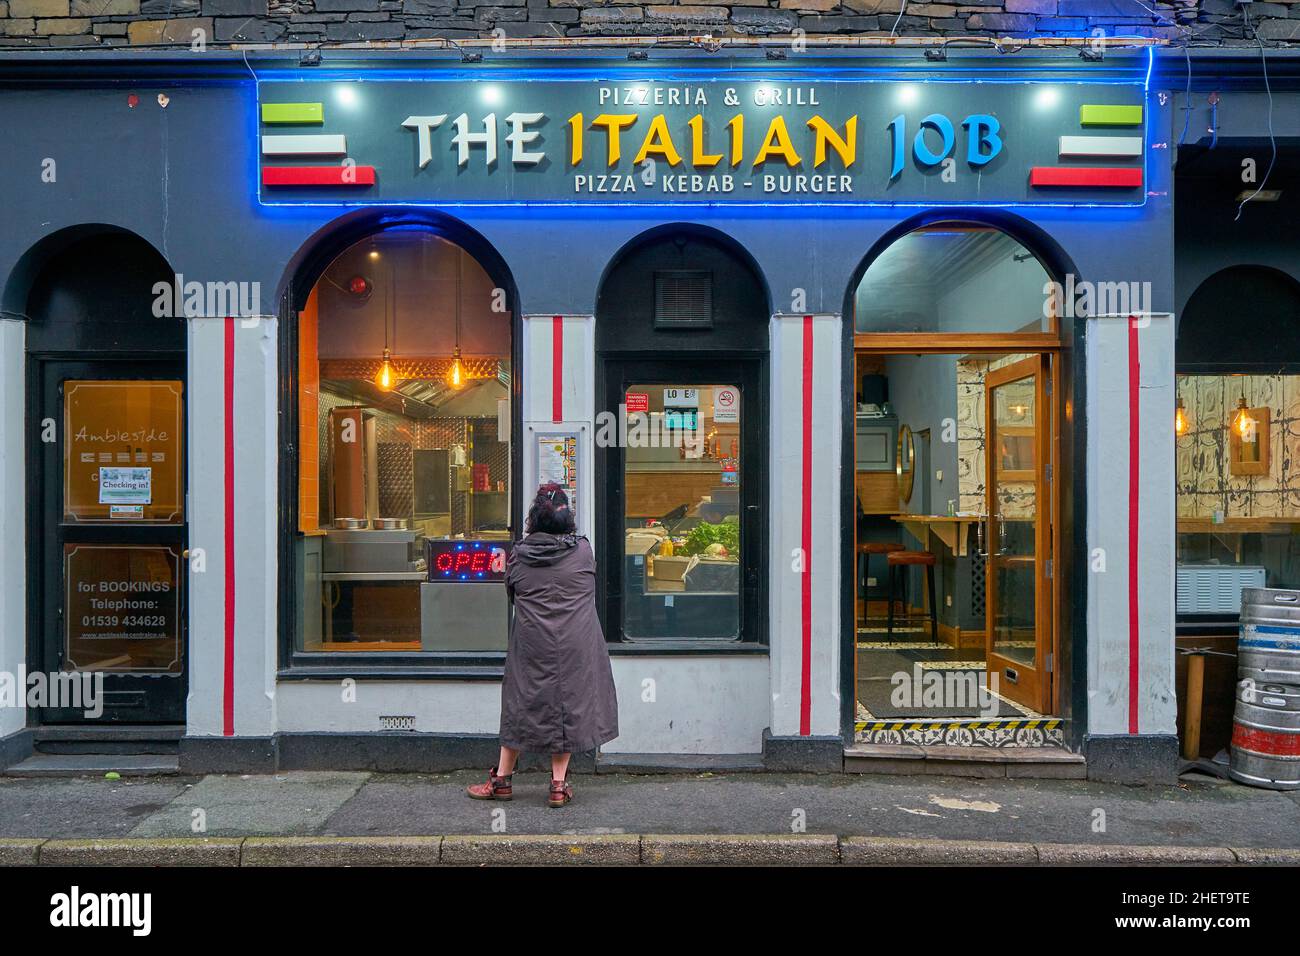 Façade de la pizzeria italienne colorée Job et grill dans la ville d'Ambleside, en Cumbria, avec une femme seule debout devant examiner le menu Banque D'Images